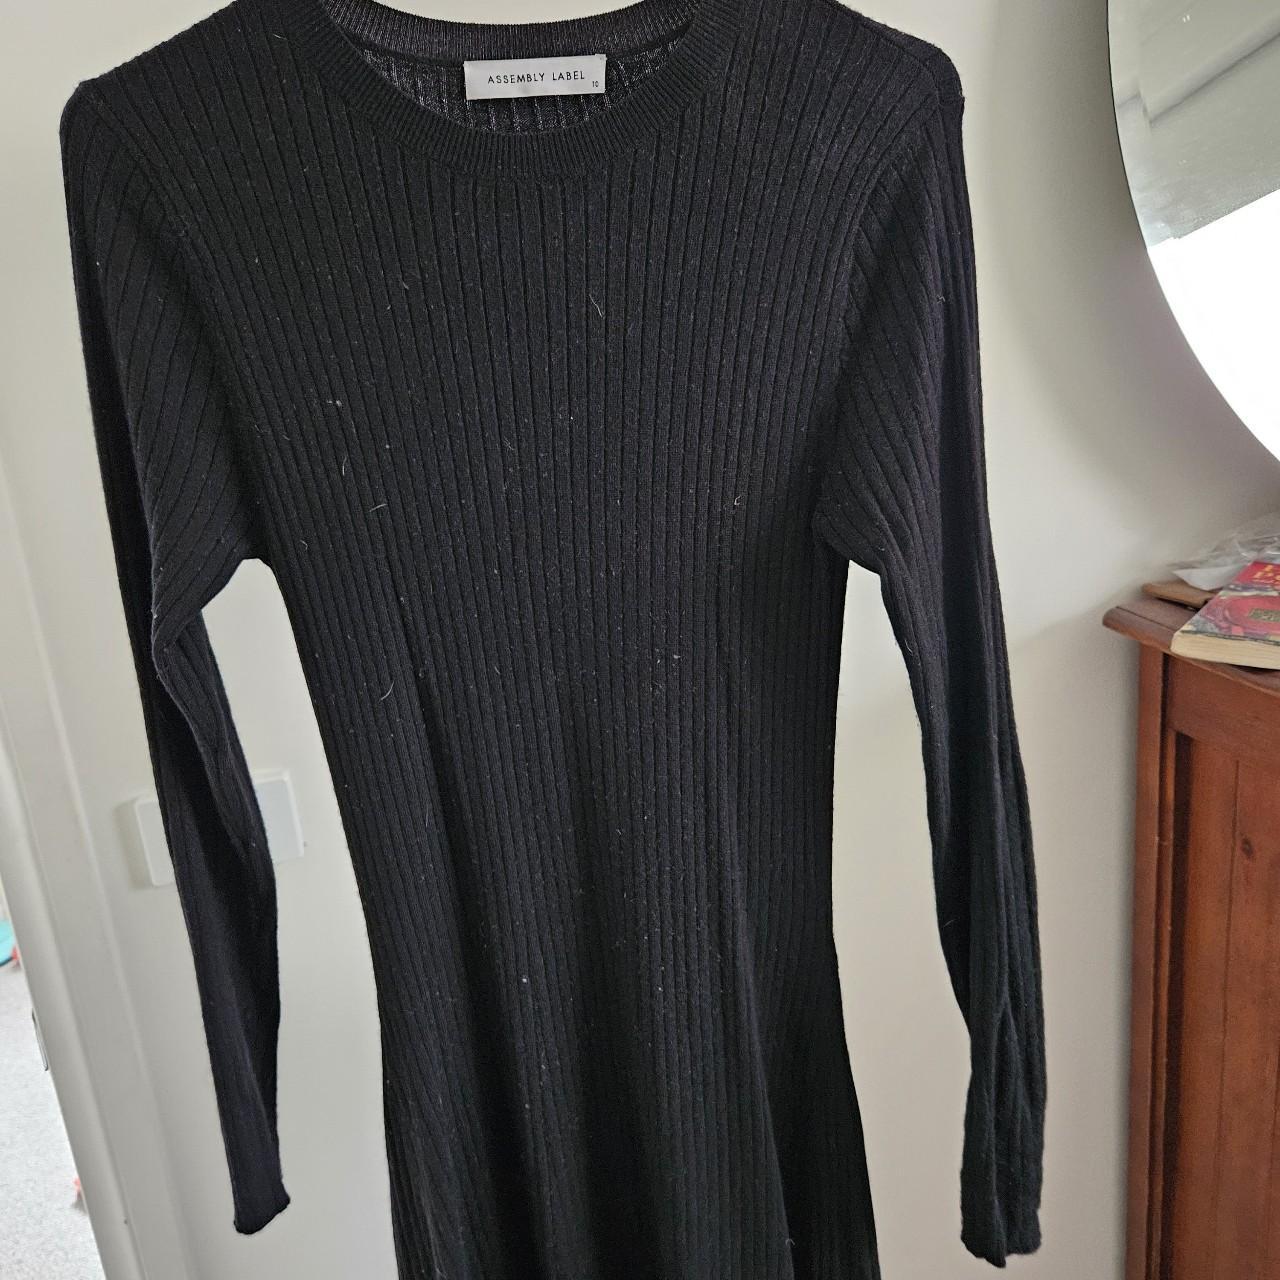 Assembly label Mia dress. Mid length knit size 10.... - Depop